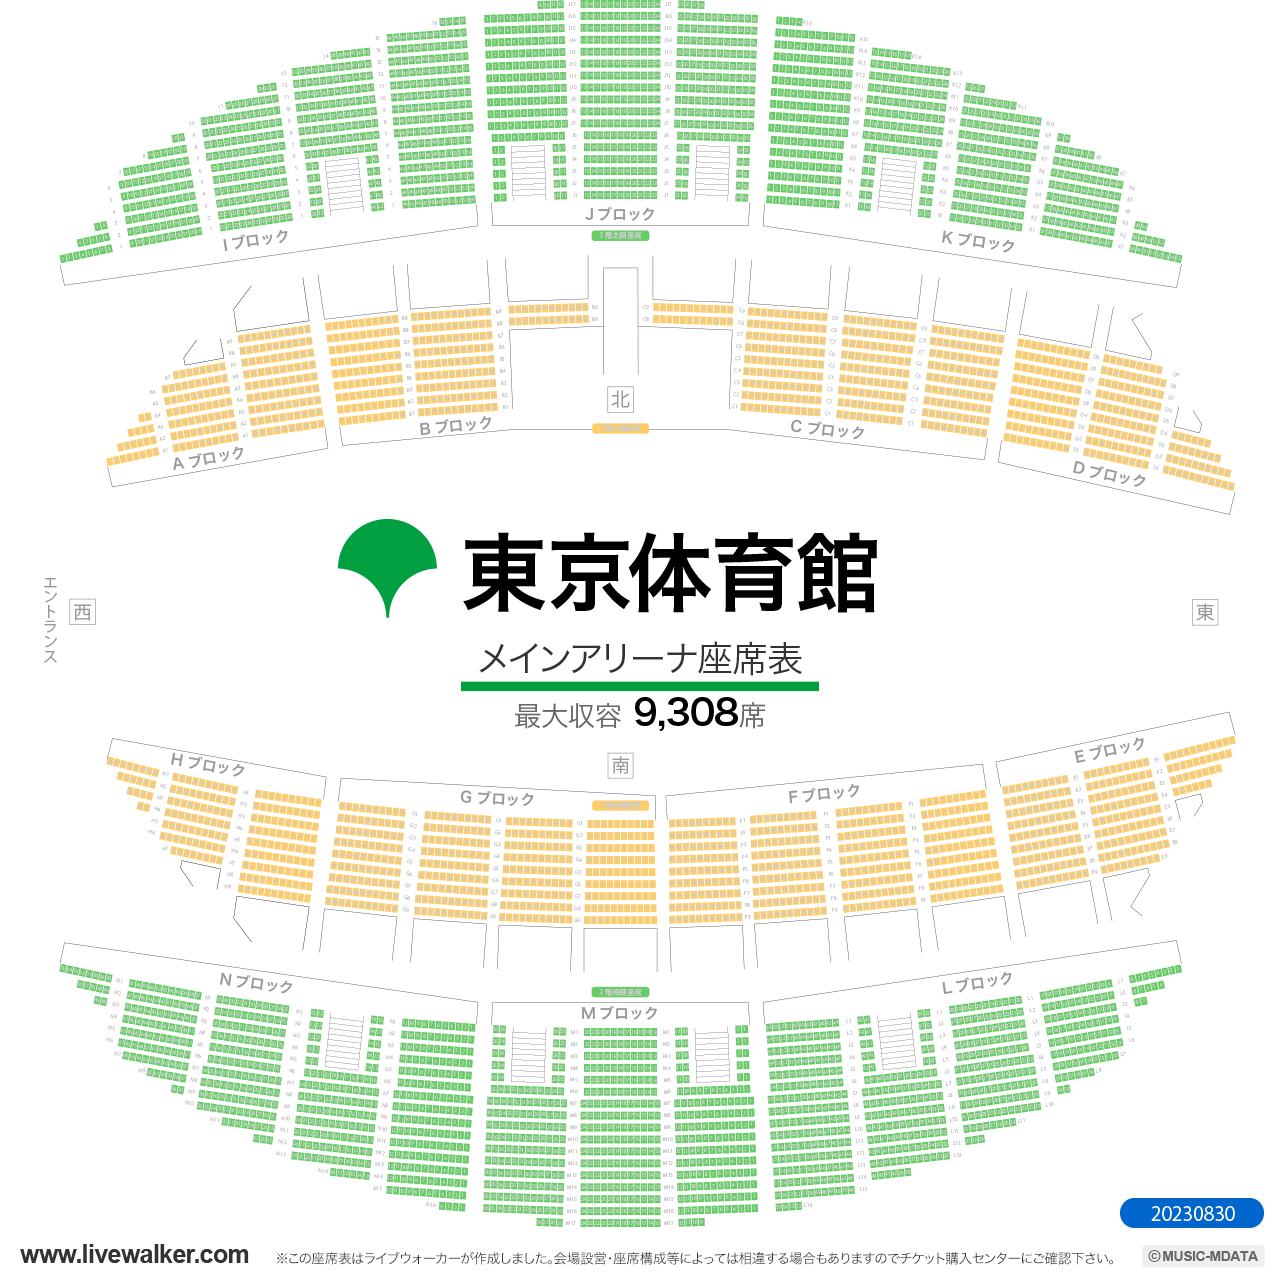 東京体育館メインアリーナの座席表